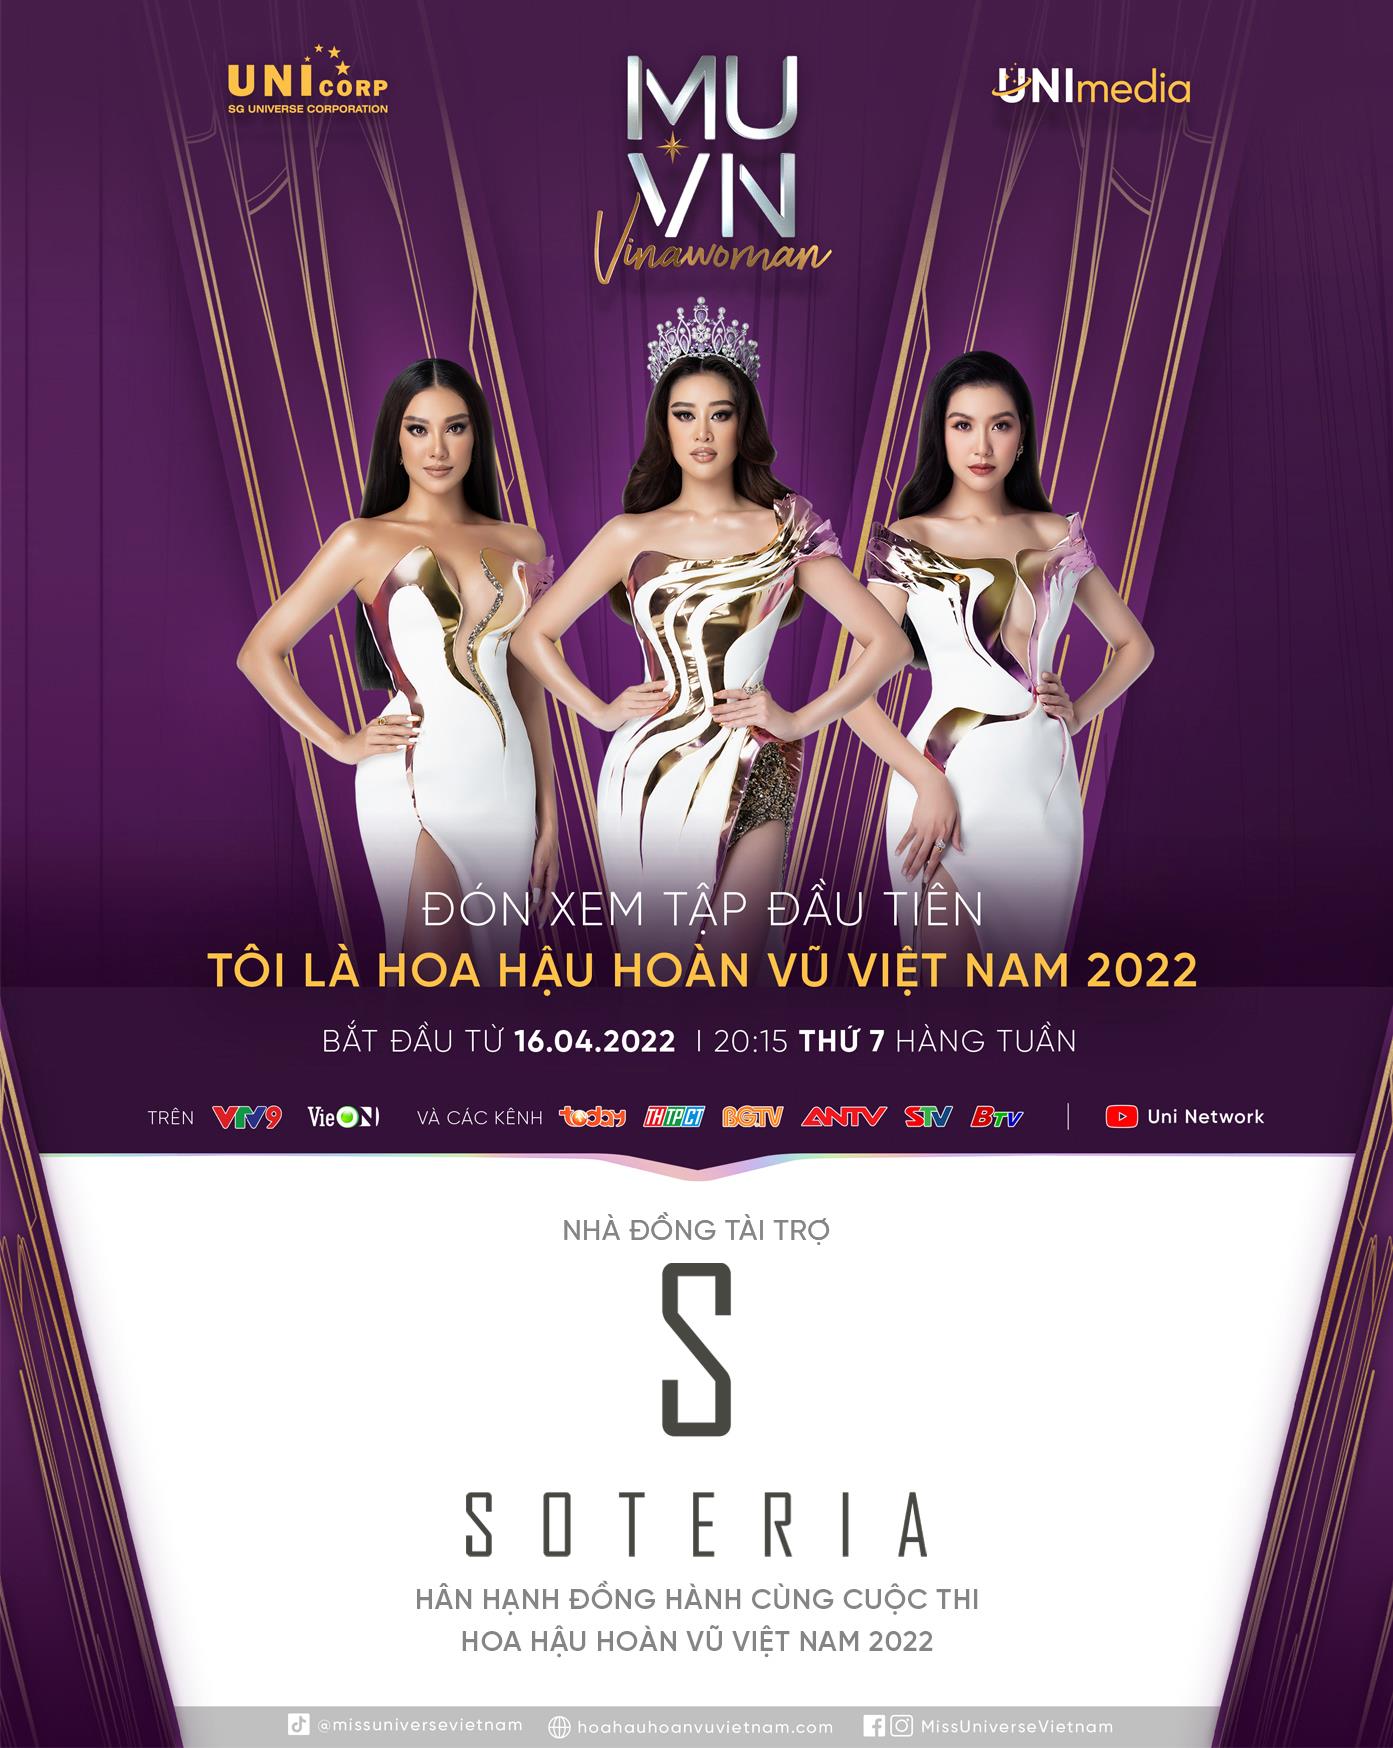 Soteria - Hân hạnh là “bạn đồng hành” thân thiết của Hoa hậu Hoàn vũ Việt Nam 2022 - Ảnh 1.